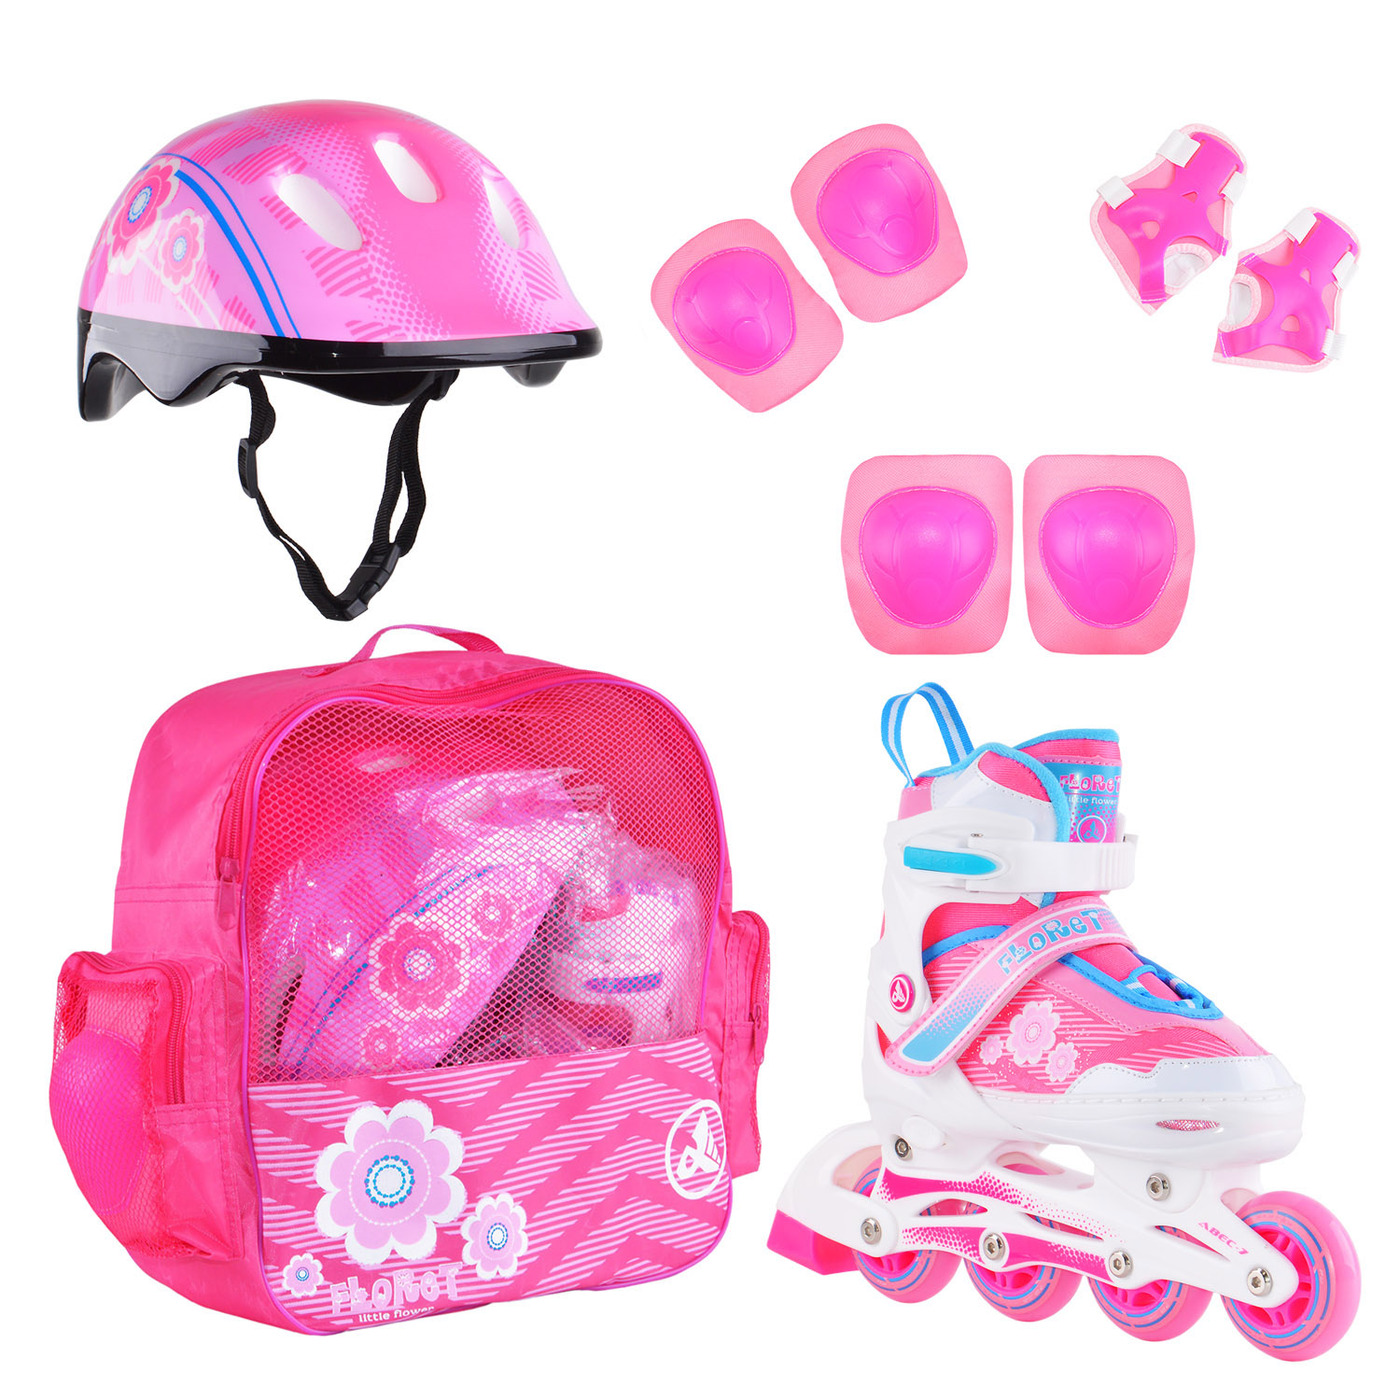 фото Раздвижные роликовые коньки alpha caprice floret wh/pink/bl, шлем, защита, сумка m: 35-38